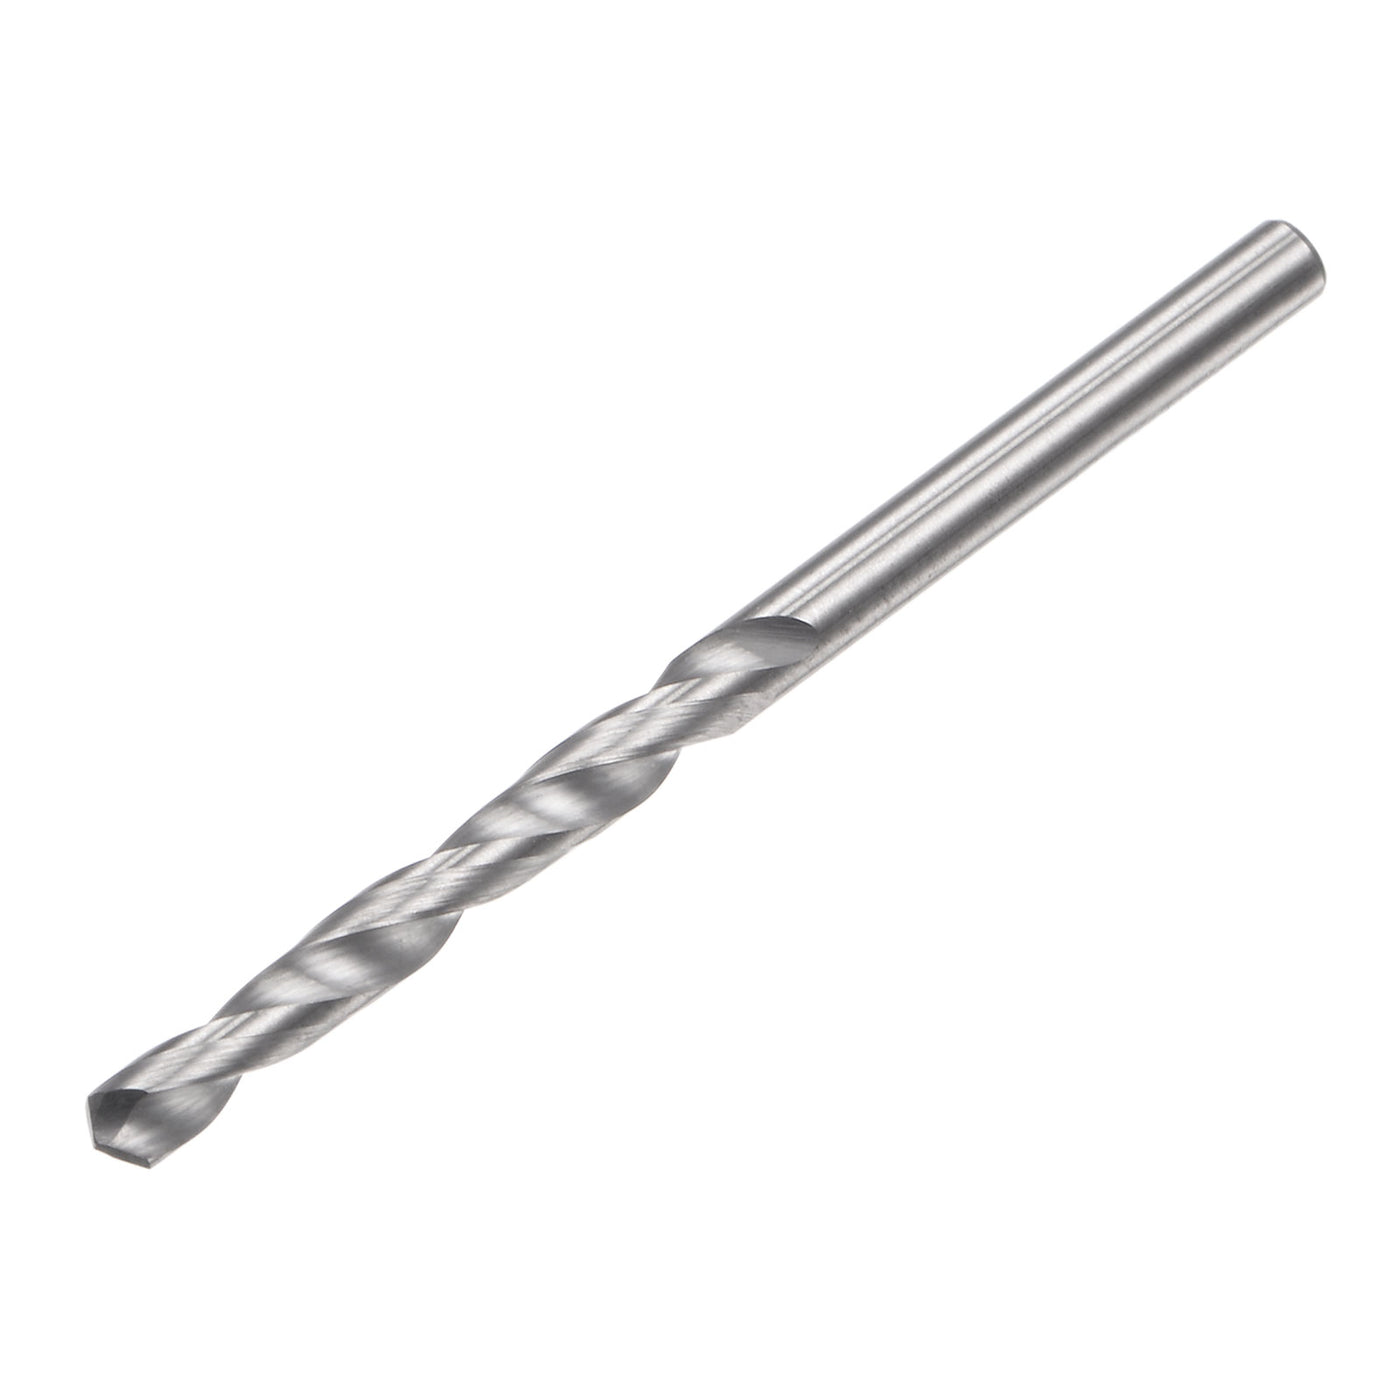 uxcell Uxcell 2.5mm C2/K20 Tungsten Carbide Straight Shank Spiral Flutes Twist Drill Bit